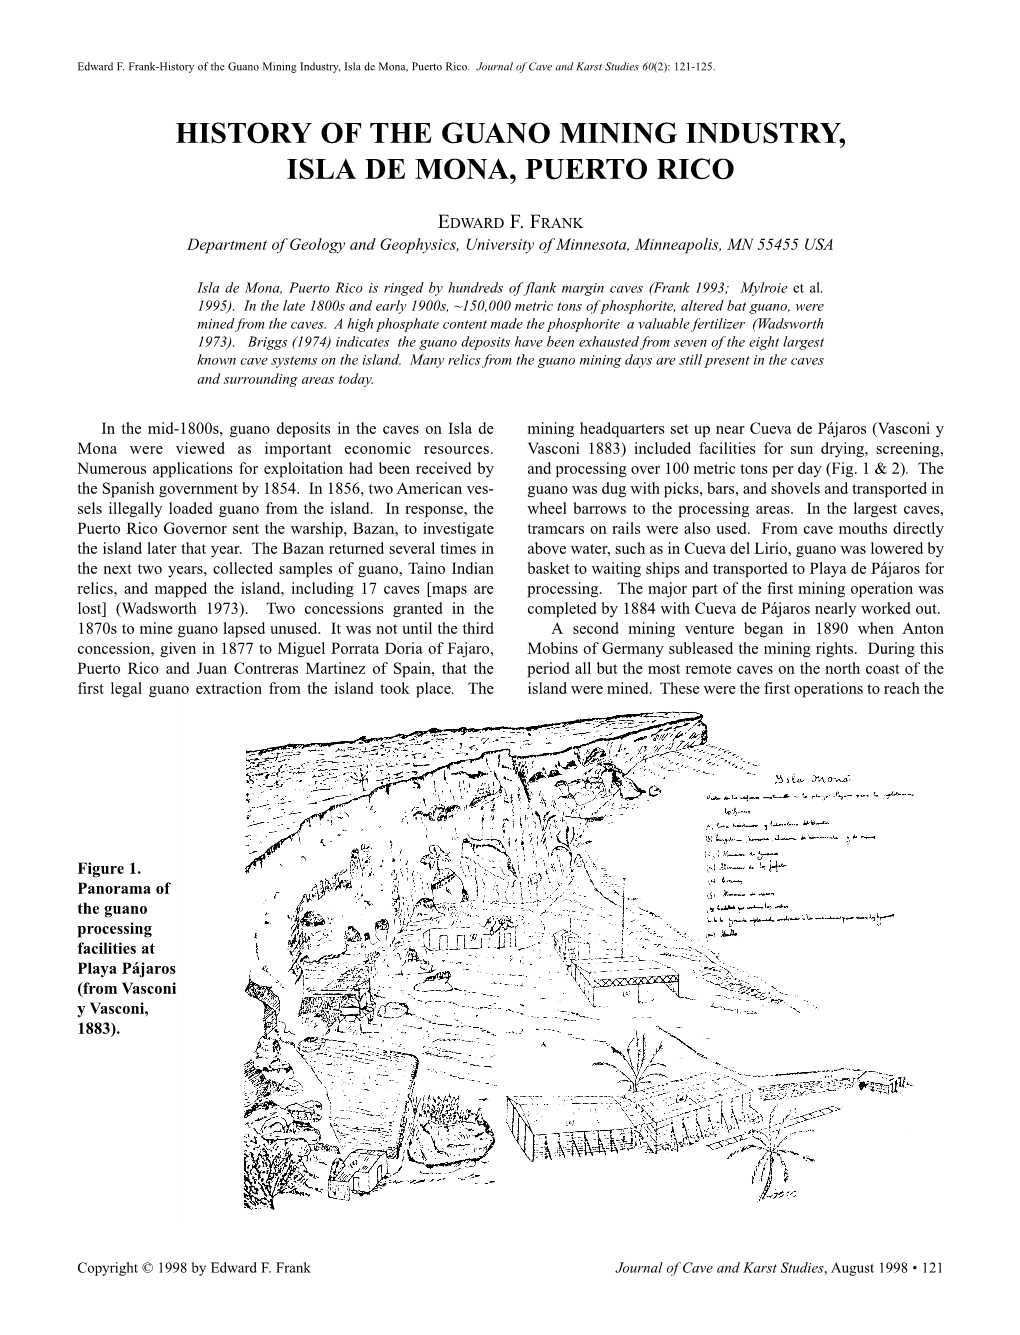 History of the Guano Mining Industry, Isla De Mona, Puerto Rico